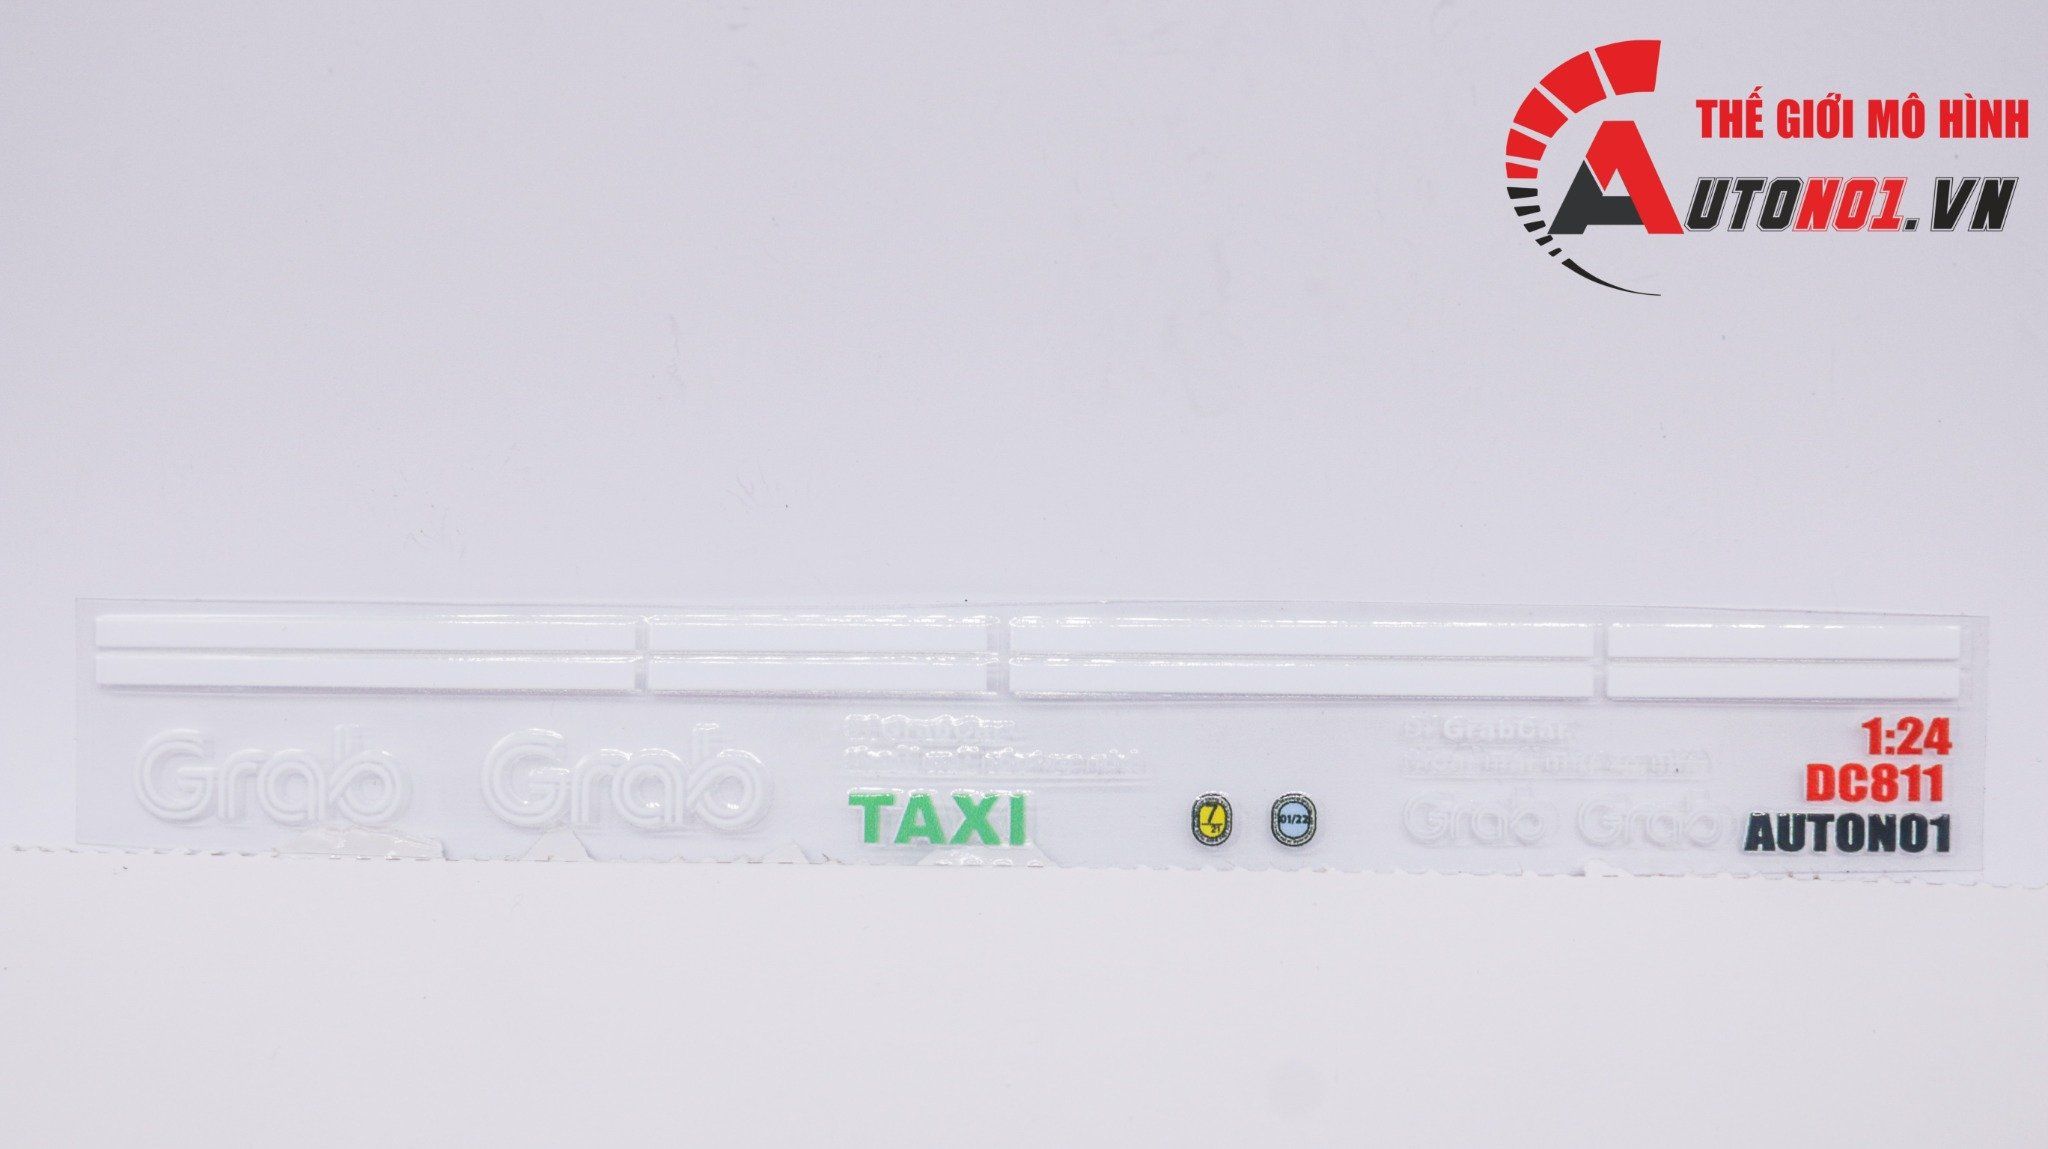  Decal UV độ xe dịch vụ - thương mại Grab taxi trắng cho xe tỉ lệ 1:24 có keo sẵn lột dán DC811 